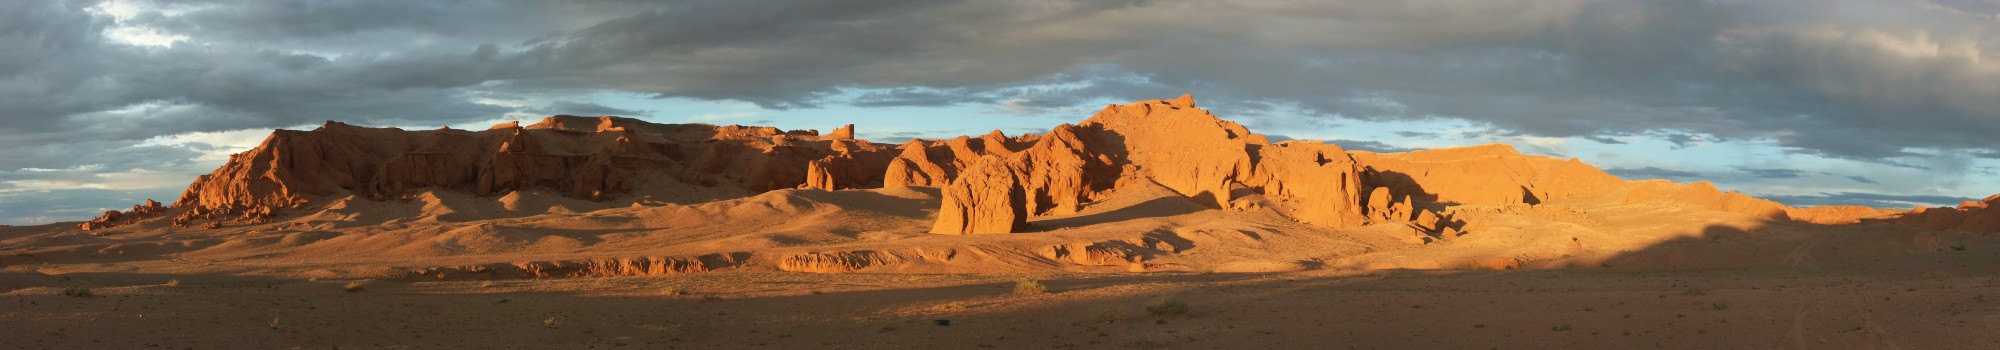 The Flaming Cliffs, Gobi Desert, Mongolia